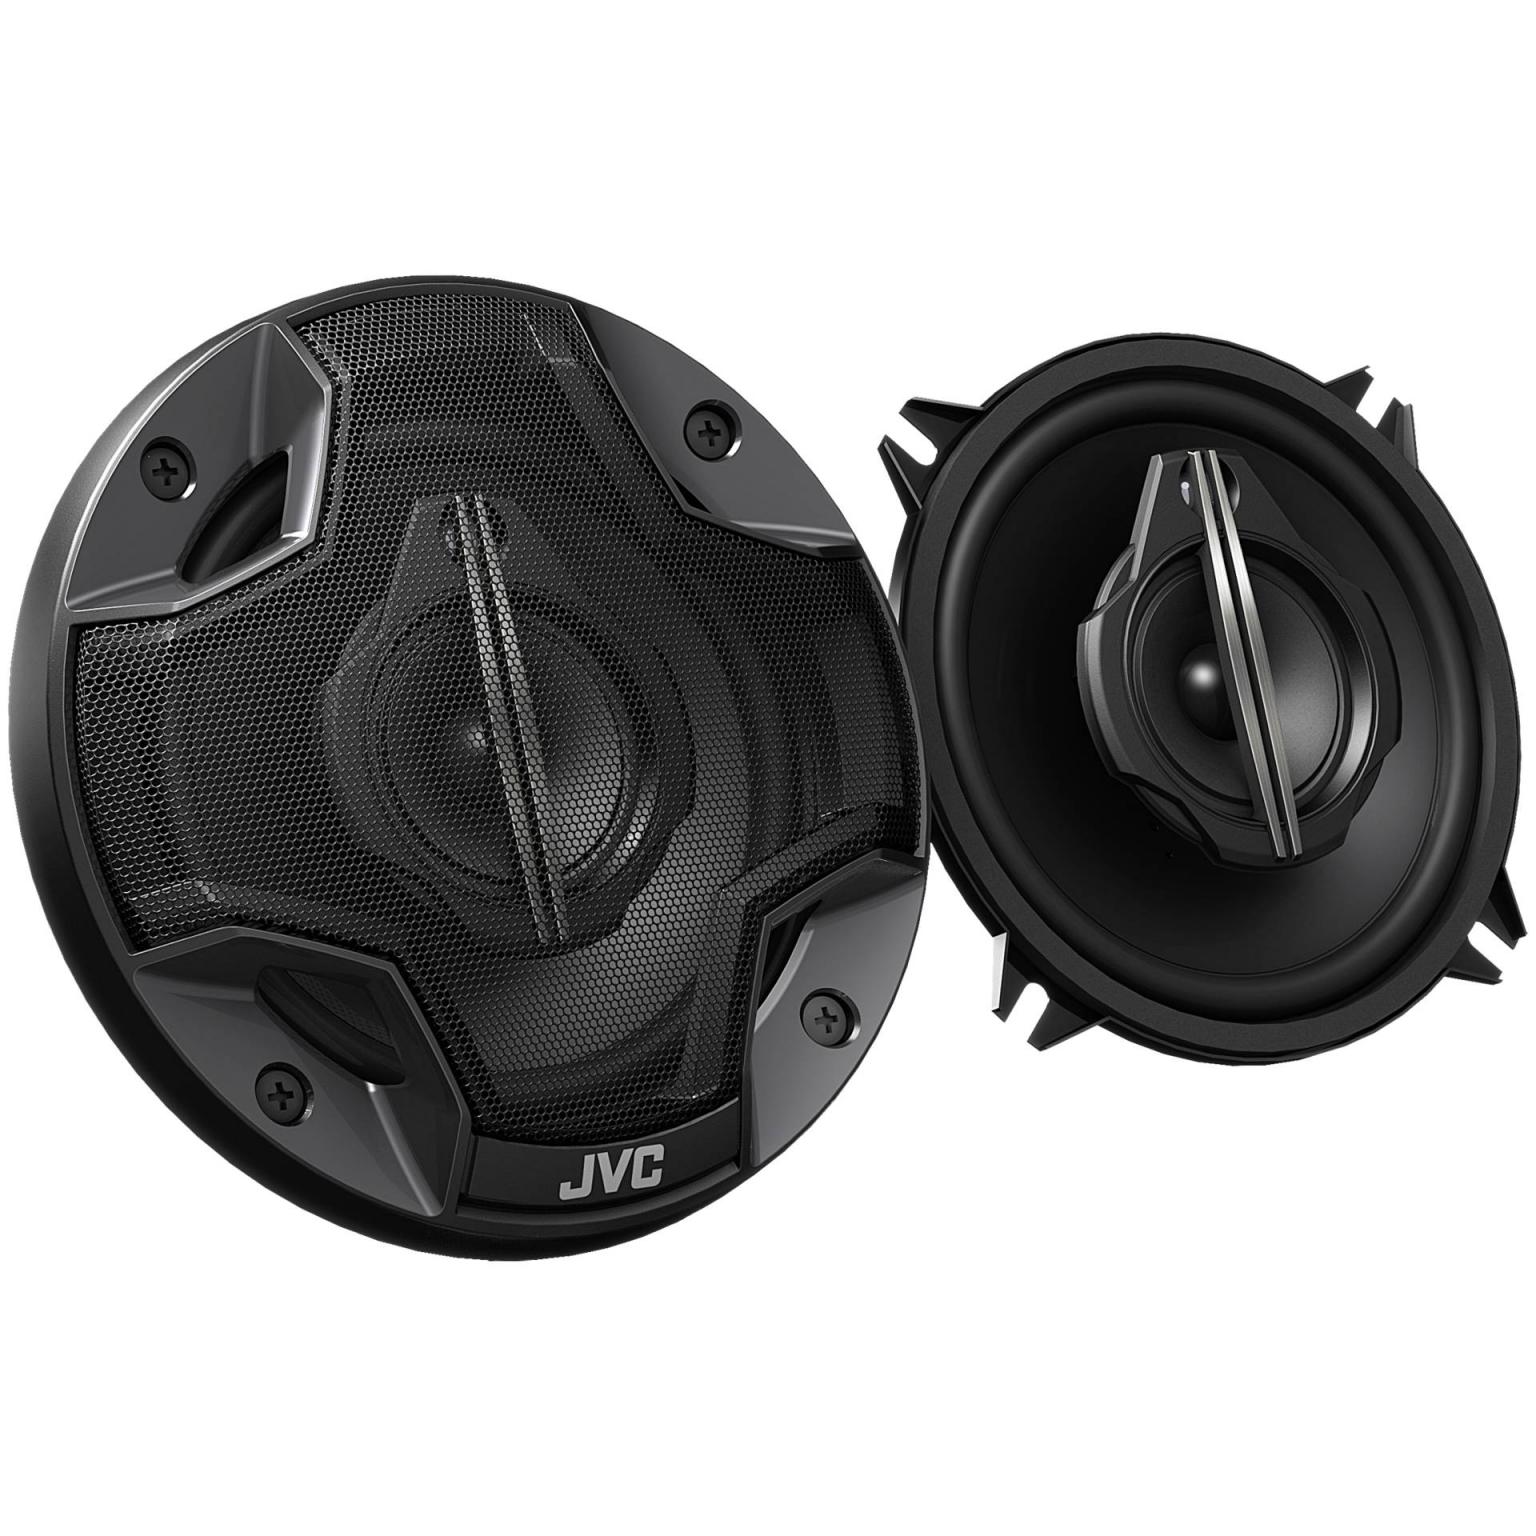 Fullrange speakers - 5 Inch - JVC